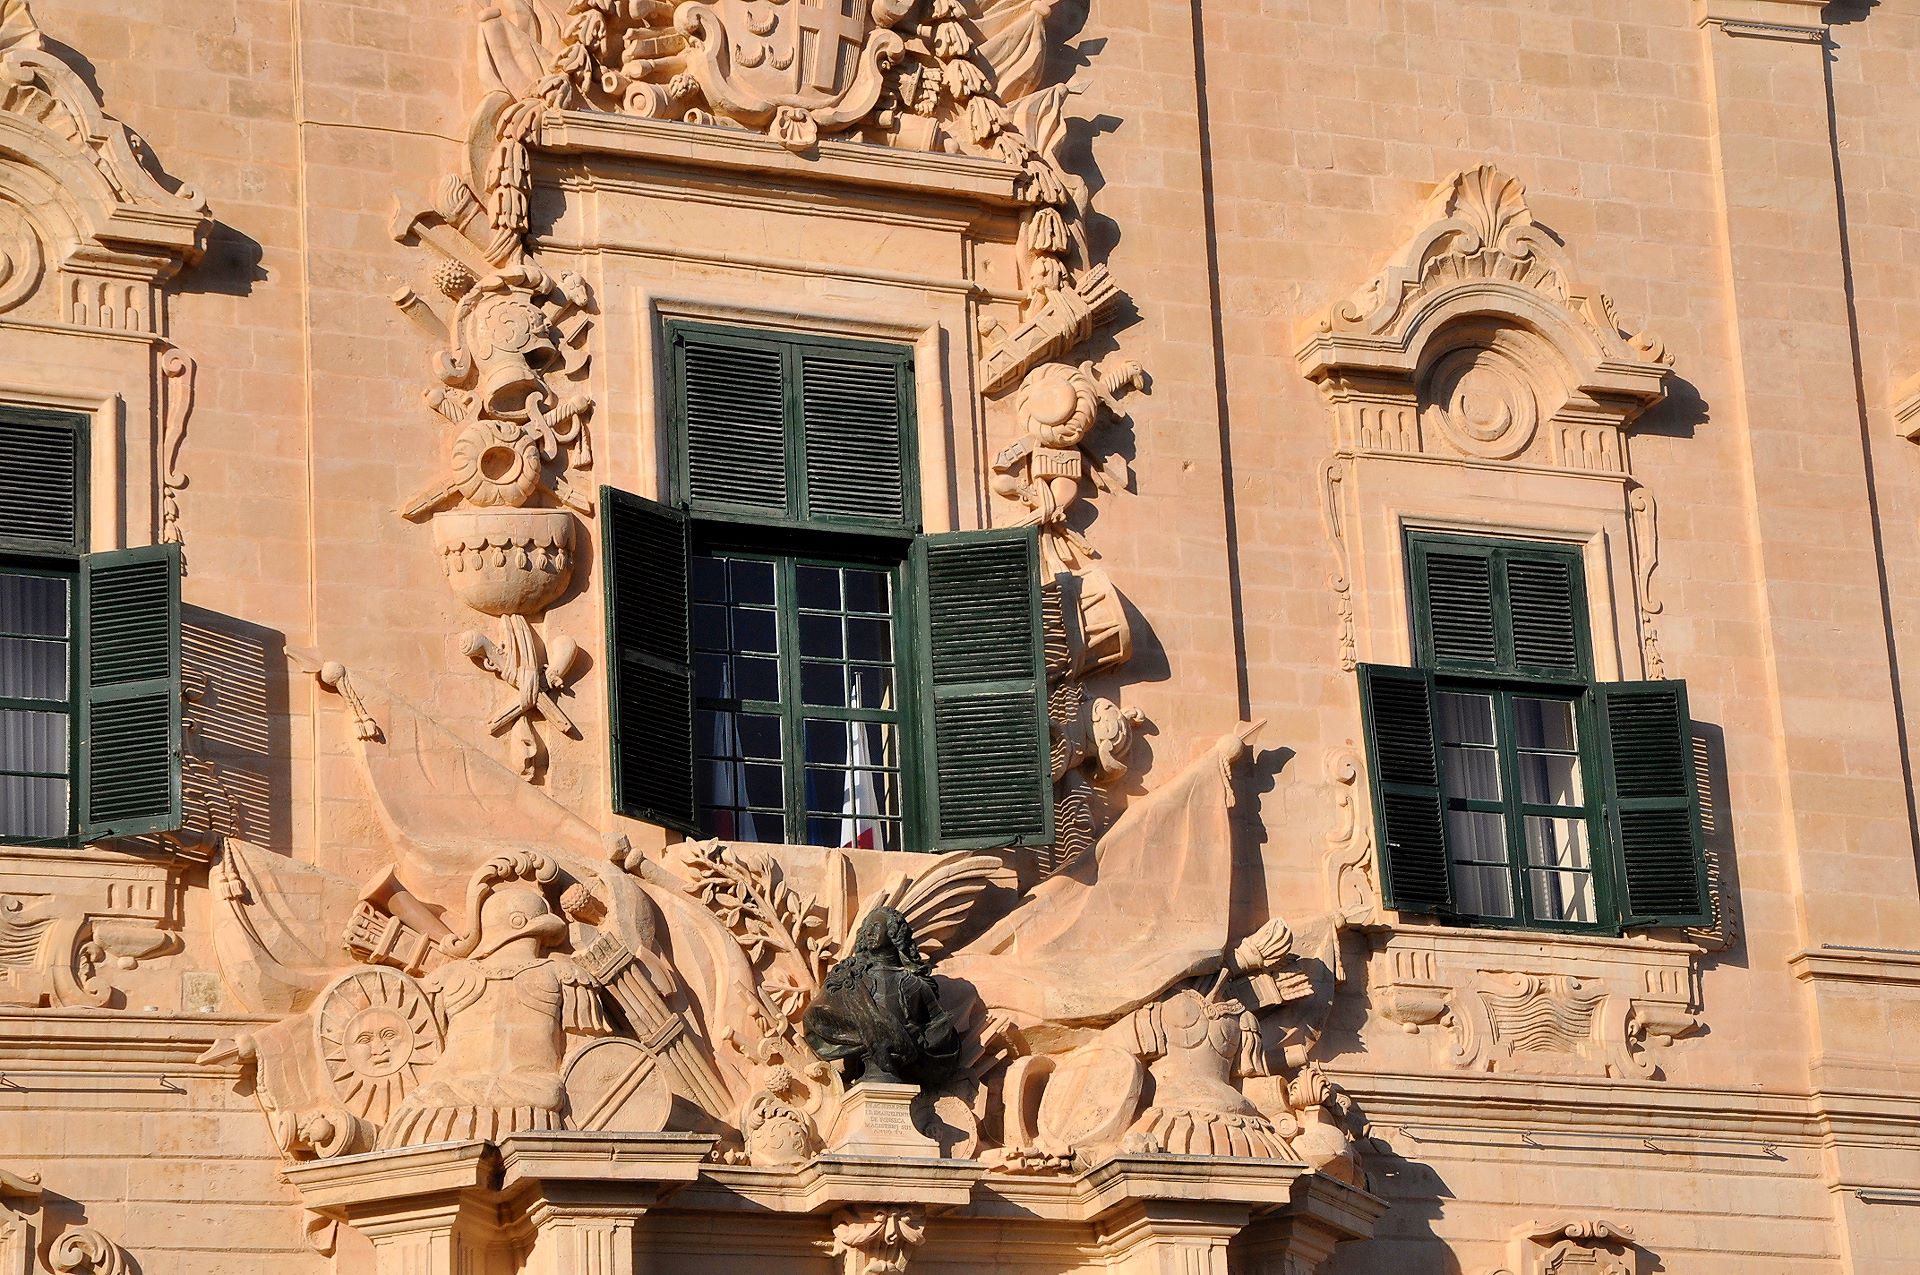 Das barocke Portal der Herberge der kastilischen Zunge (Auberge de Castile et Léon) schmückt u.a. eine Büste des Großmeisters Manoel Pinto